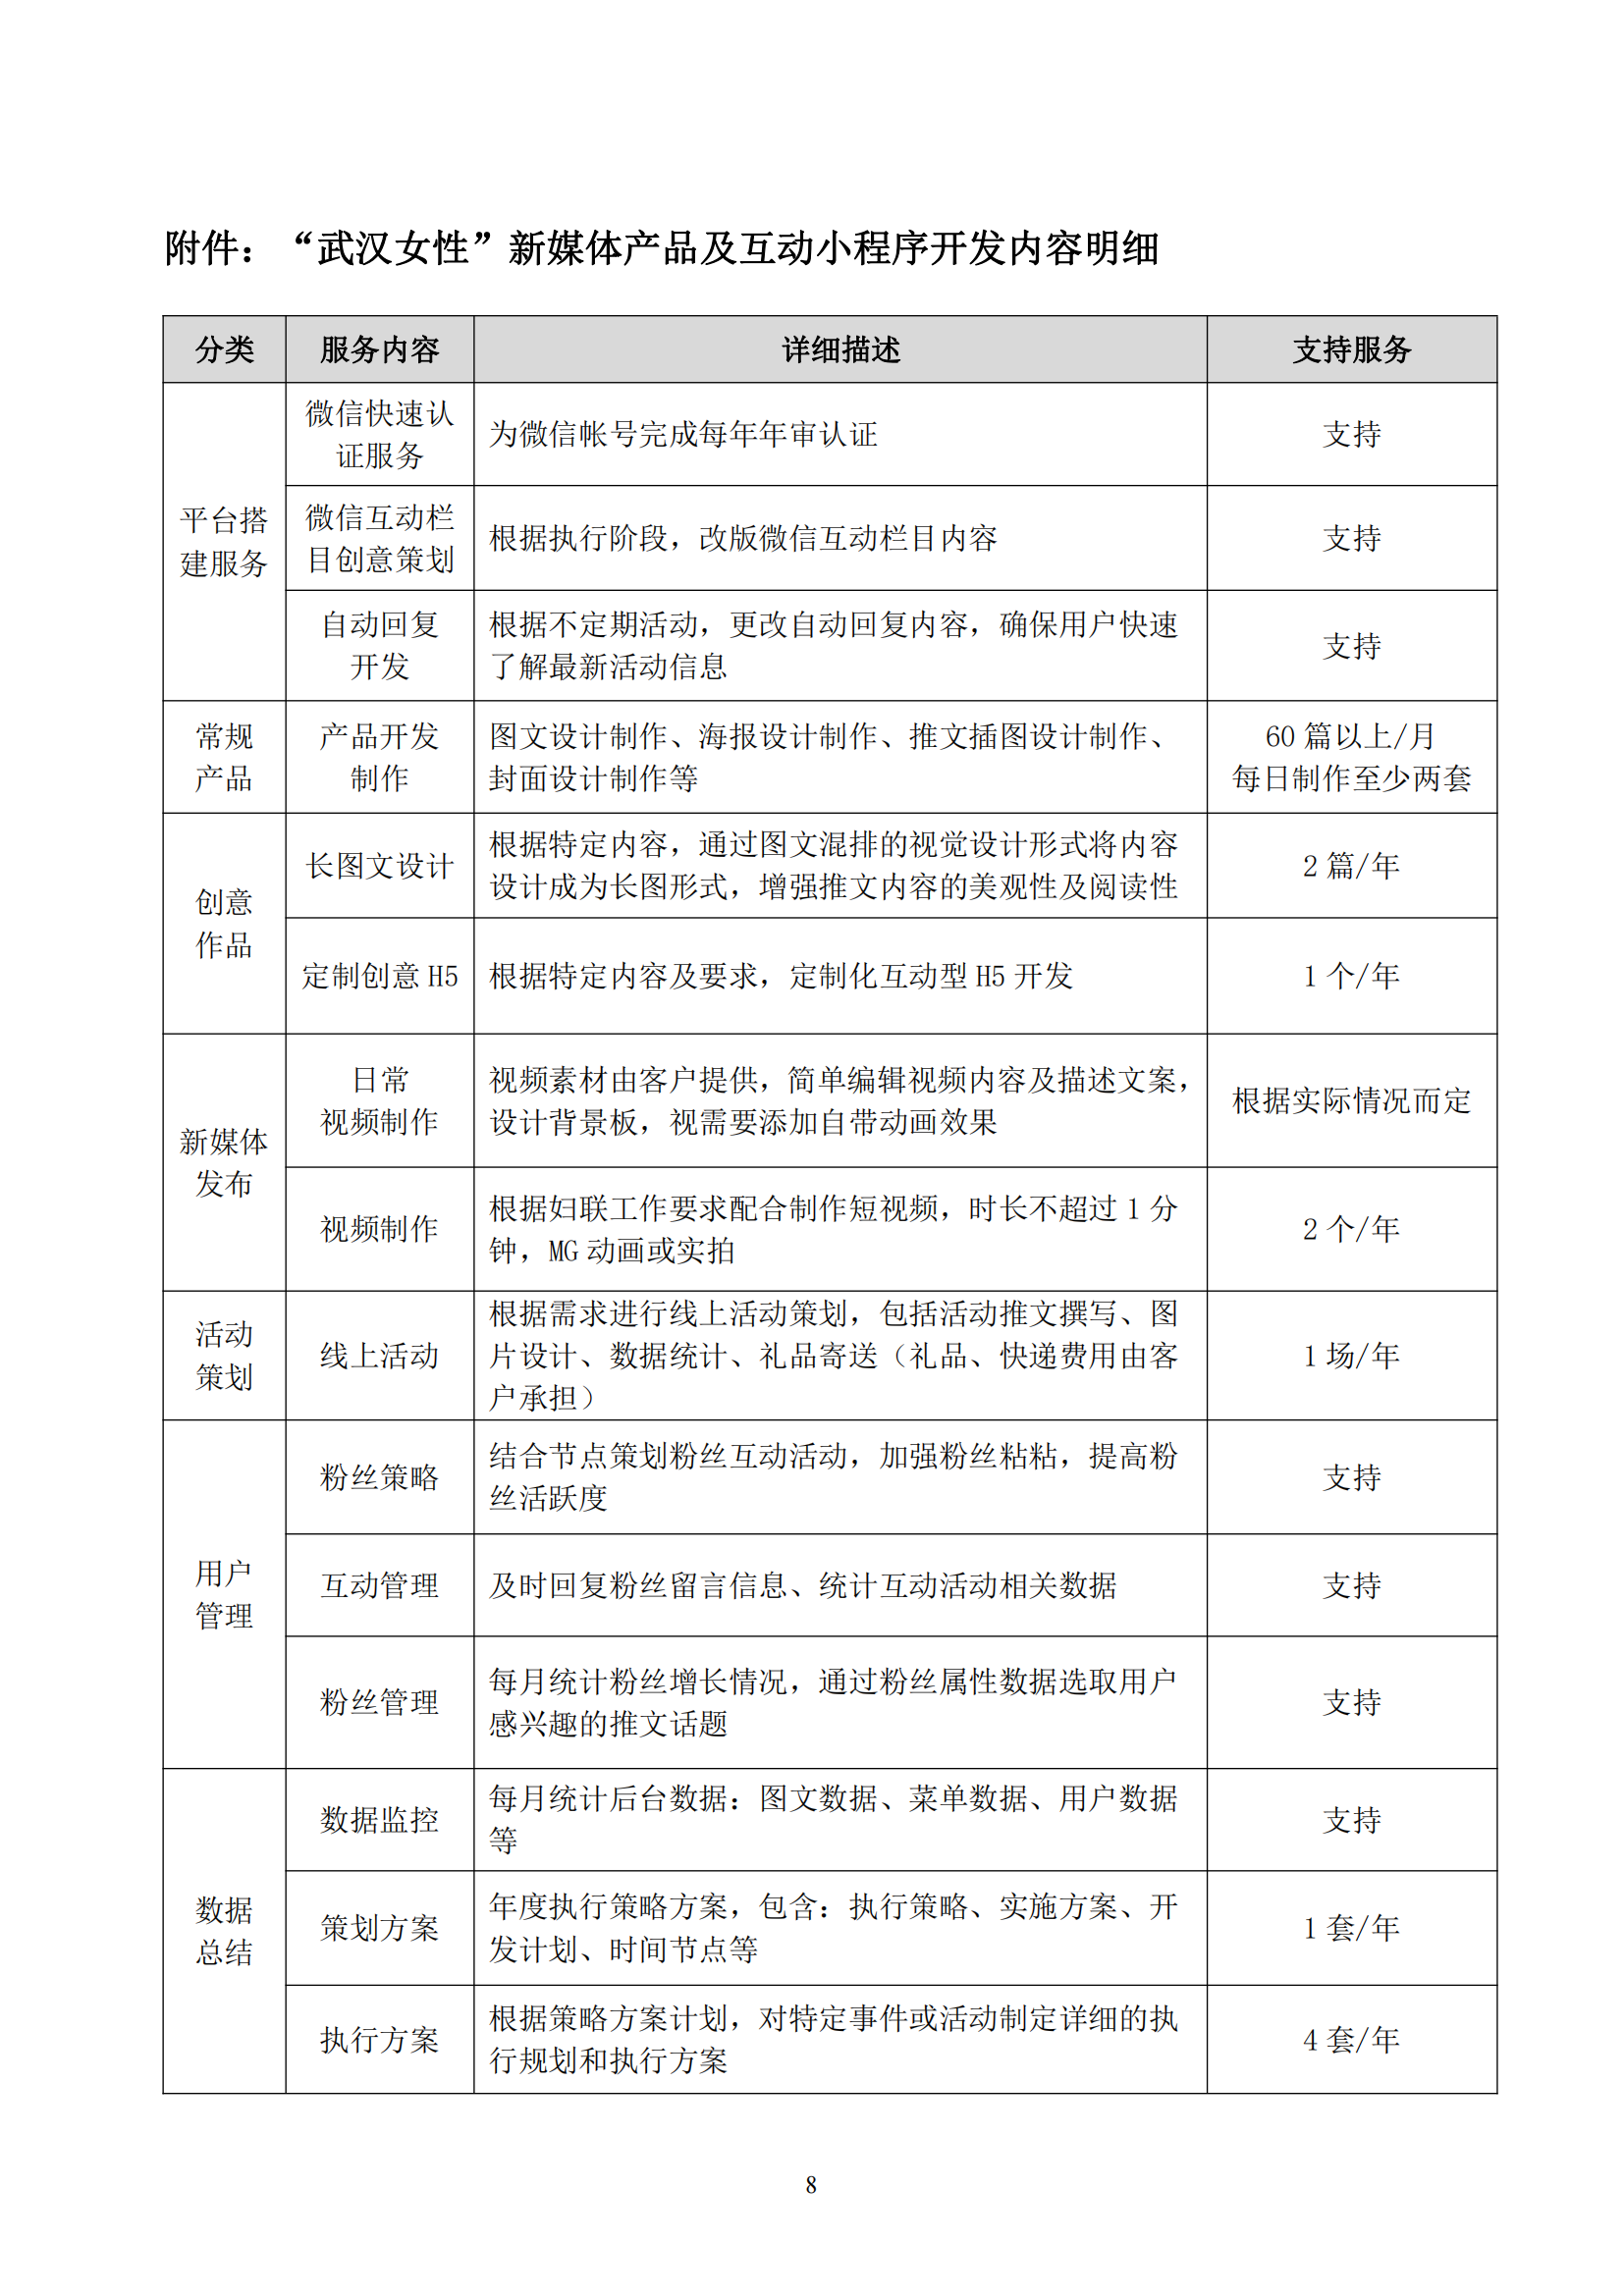 武汉妇联官方微信新媒体运维及改版升级项目合同_08.png